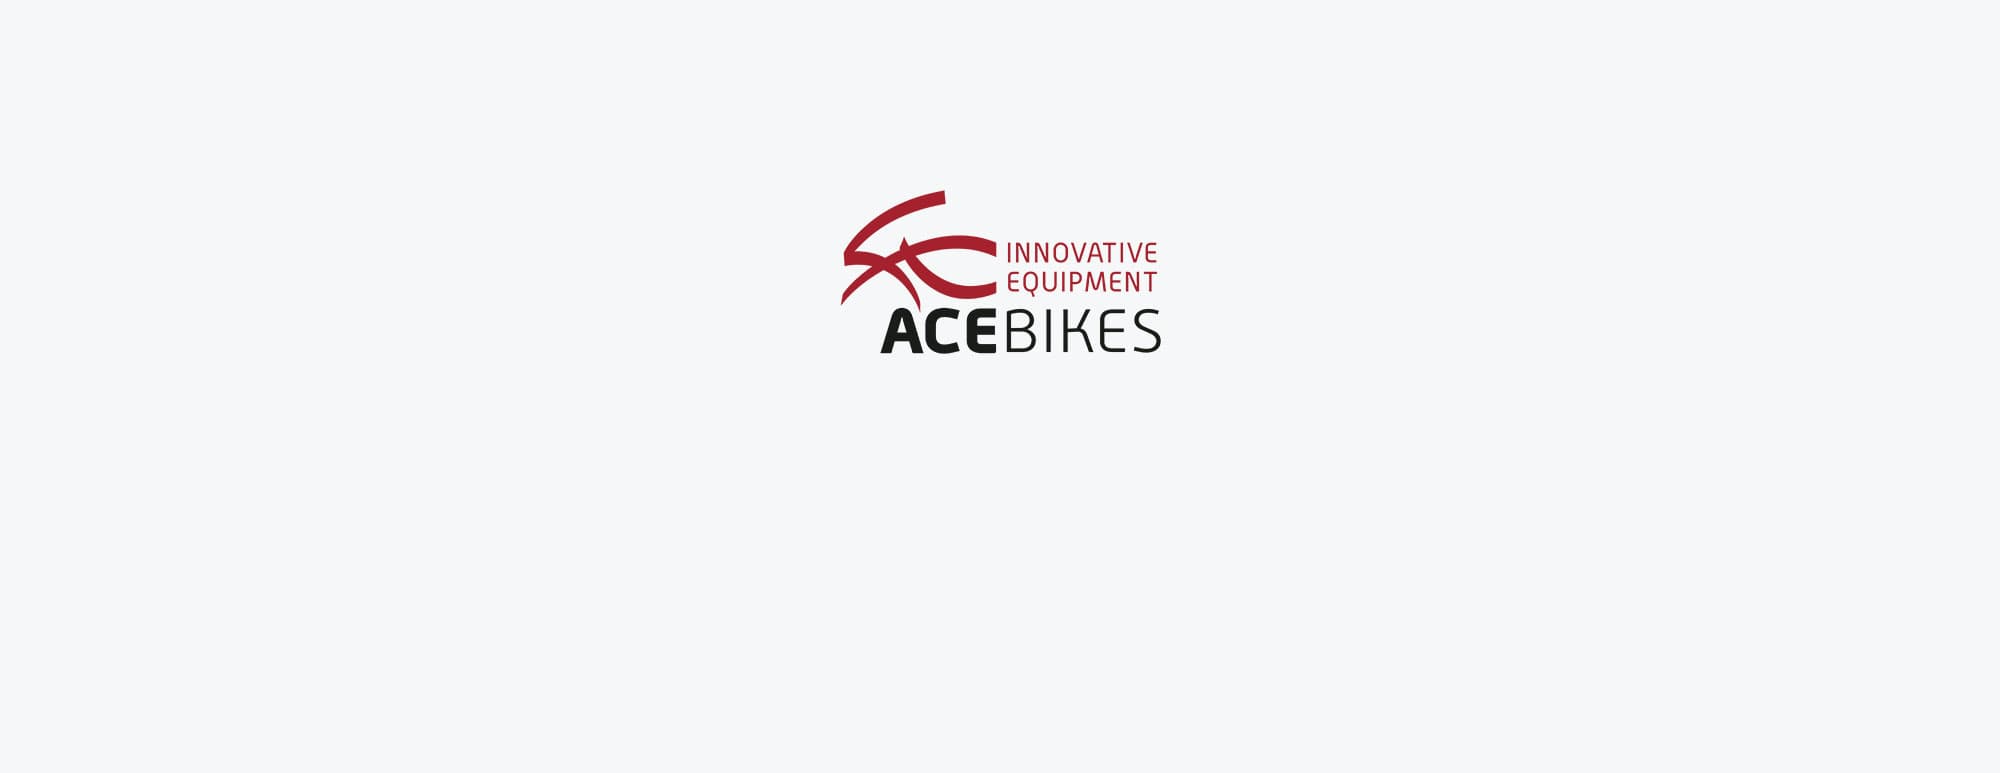 Acebikes Zurrgurte & Mehr: Alles was sie zum Transport brauchen